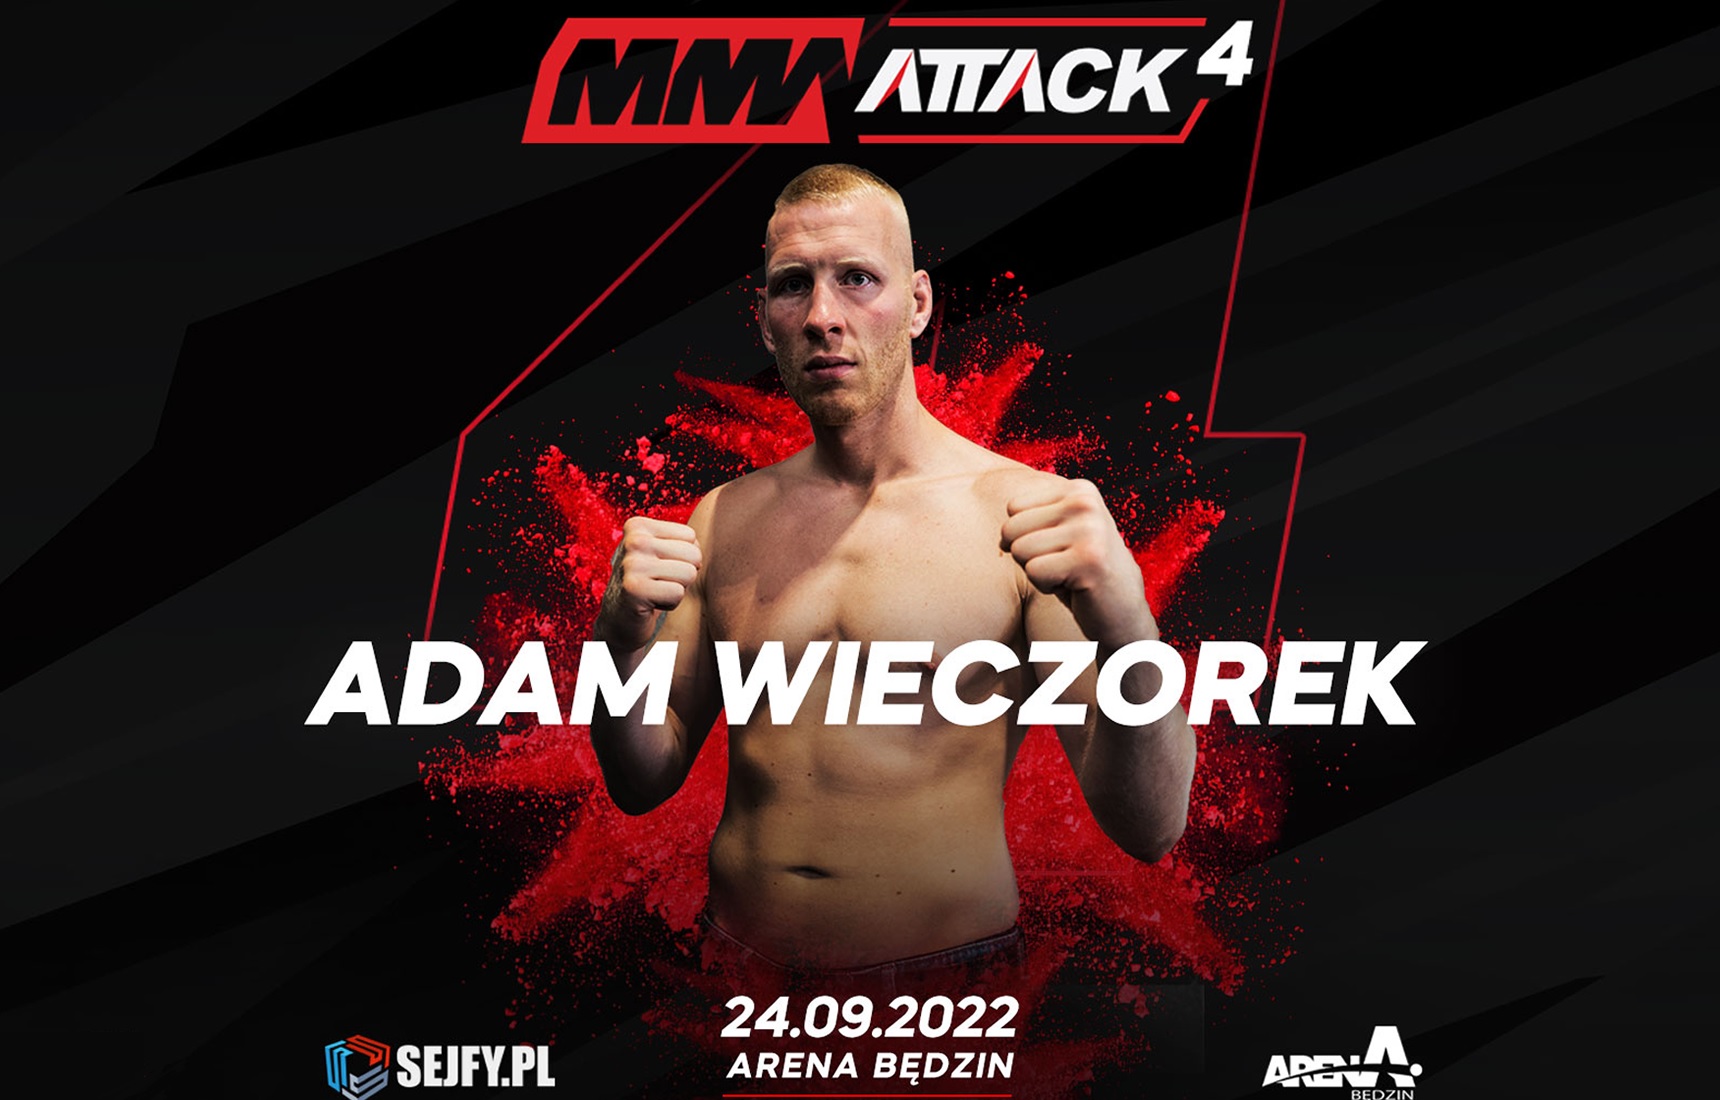 Adam Wieczorek MMA Attack 4